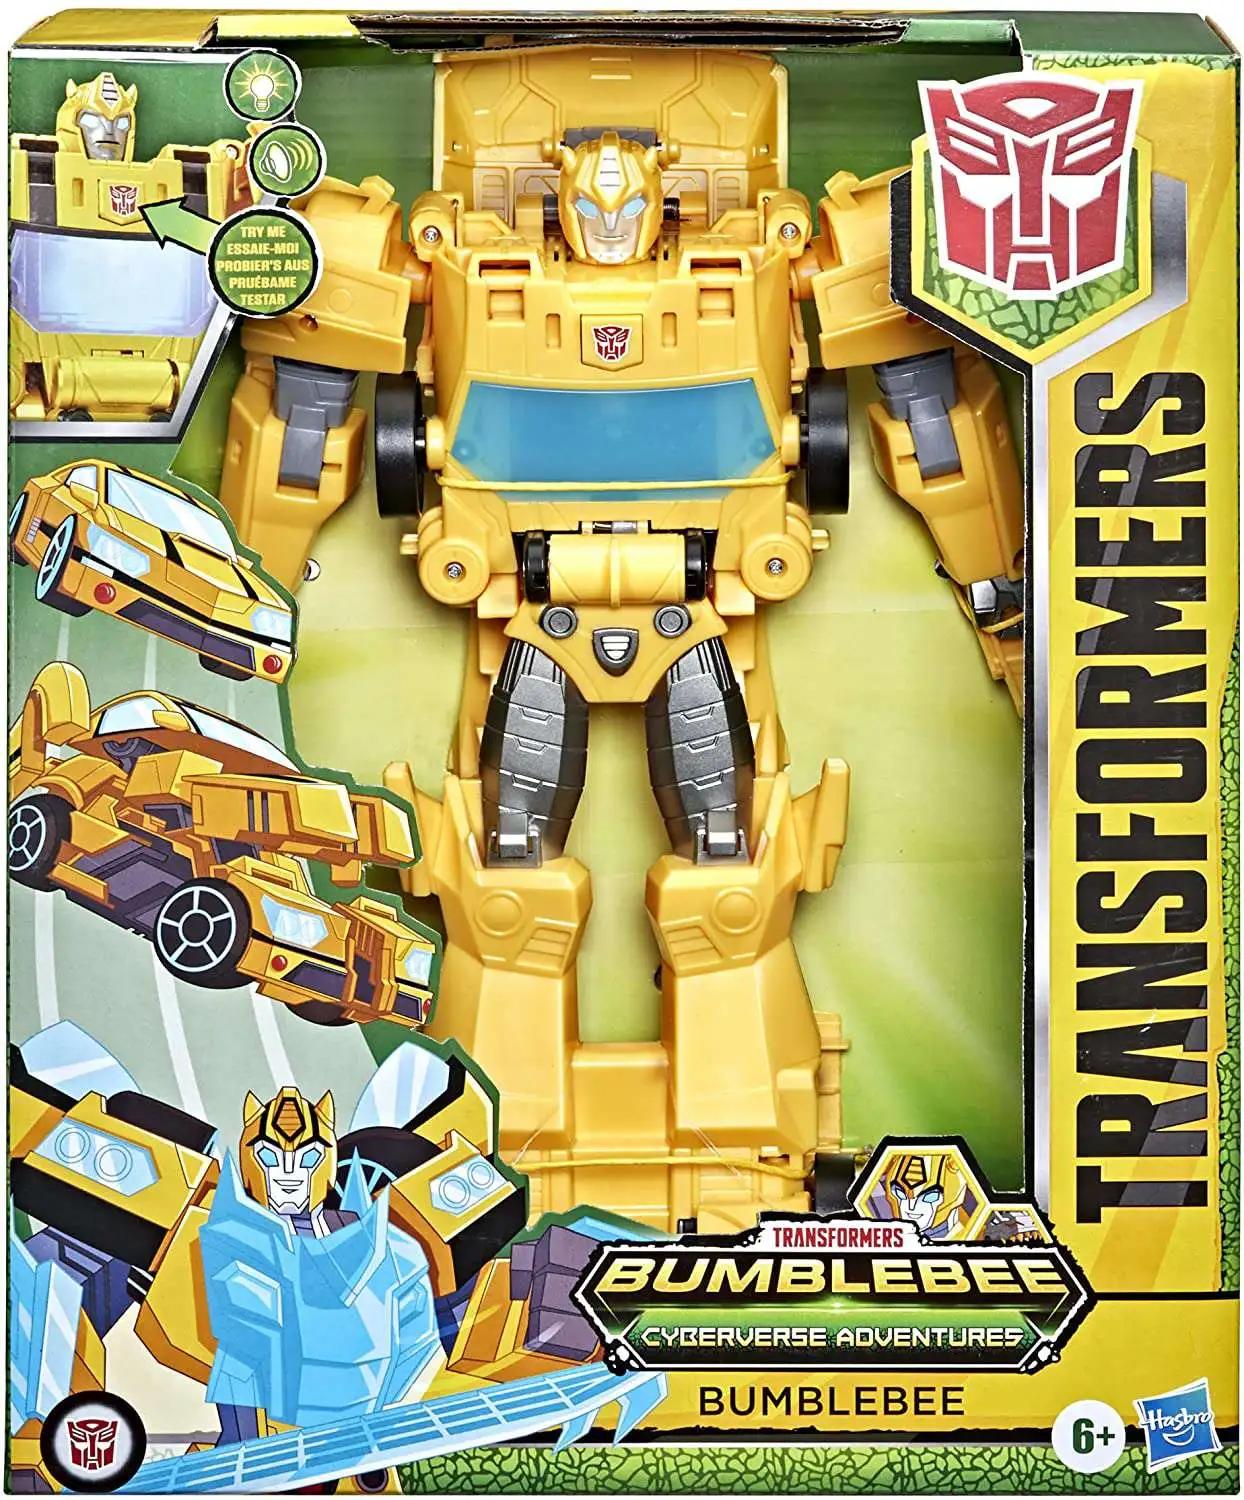 Transformers Bumblebee Cyberverse Adventures Action Figures Hasbro Robots NEW 